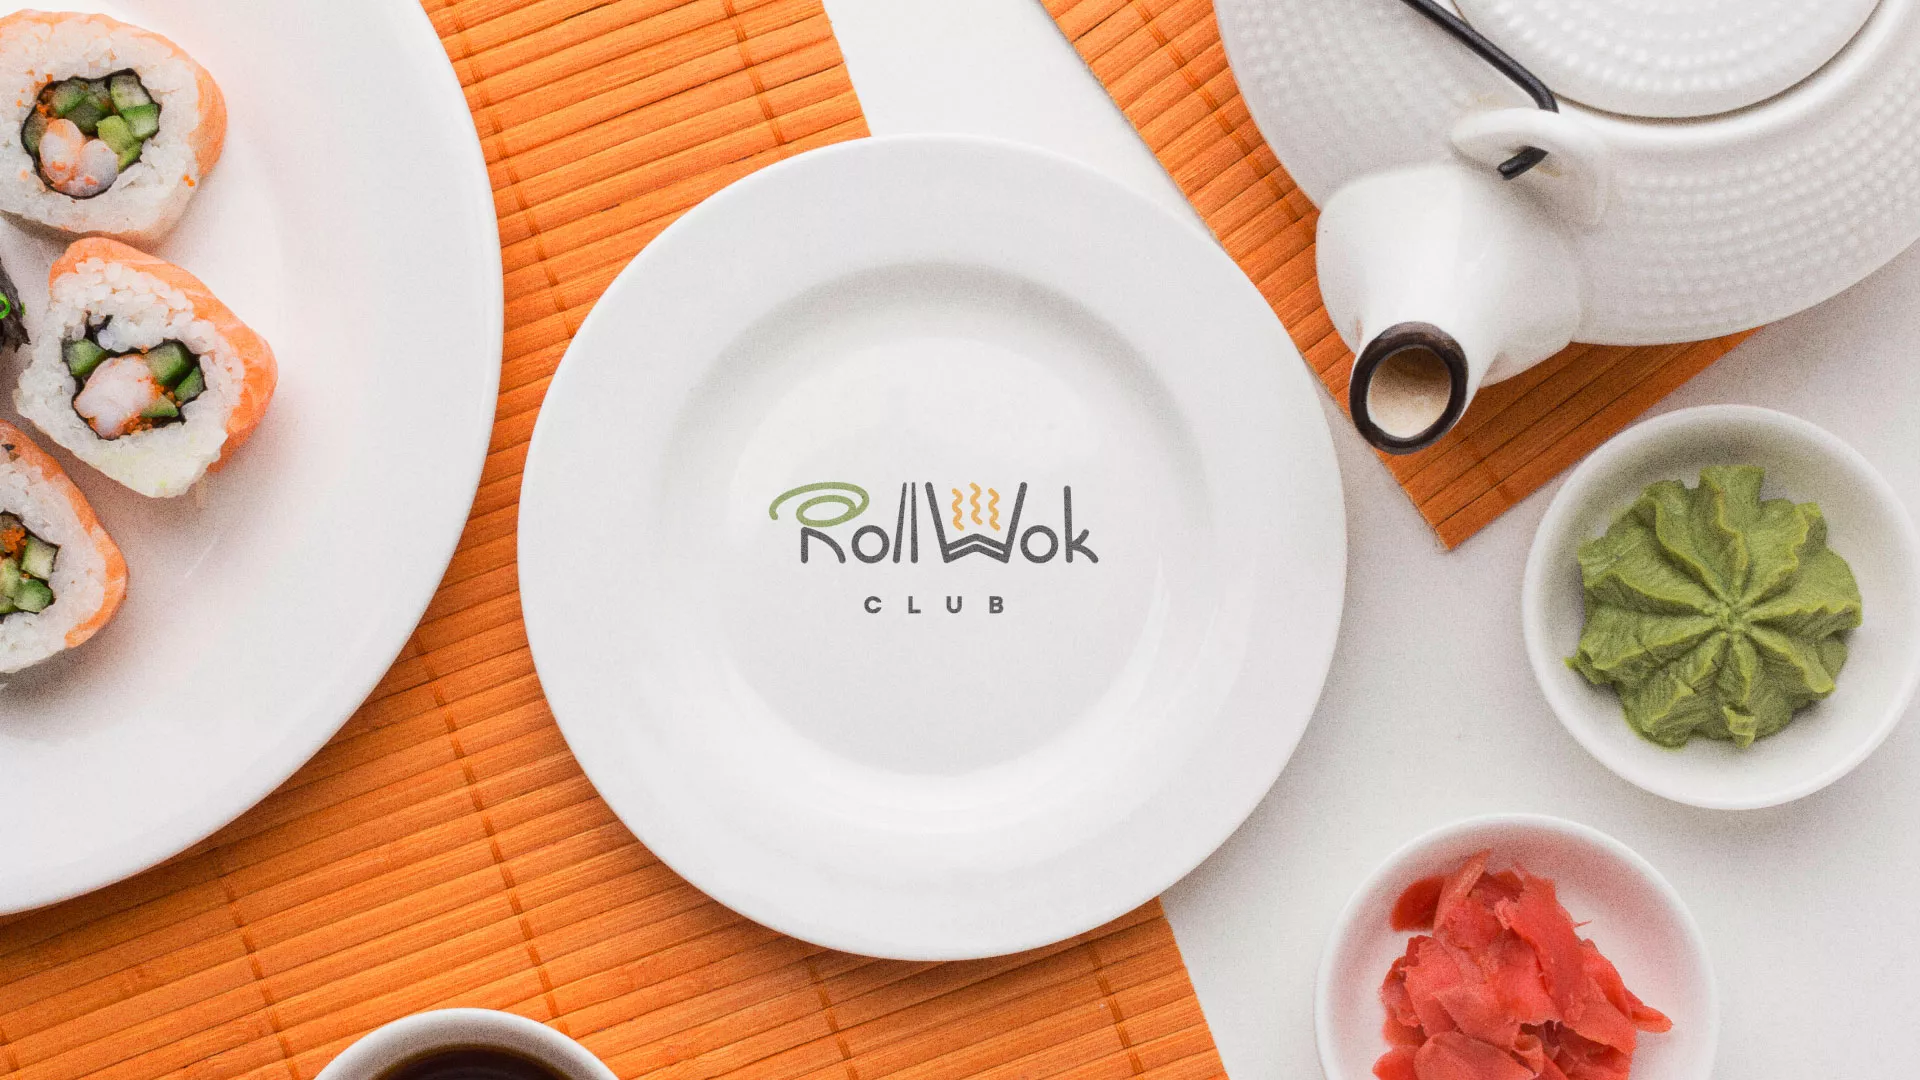 Разработка логотипа и фирменного стиля суши-бара «Roll Wok Club» в Назрани